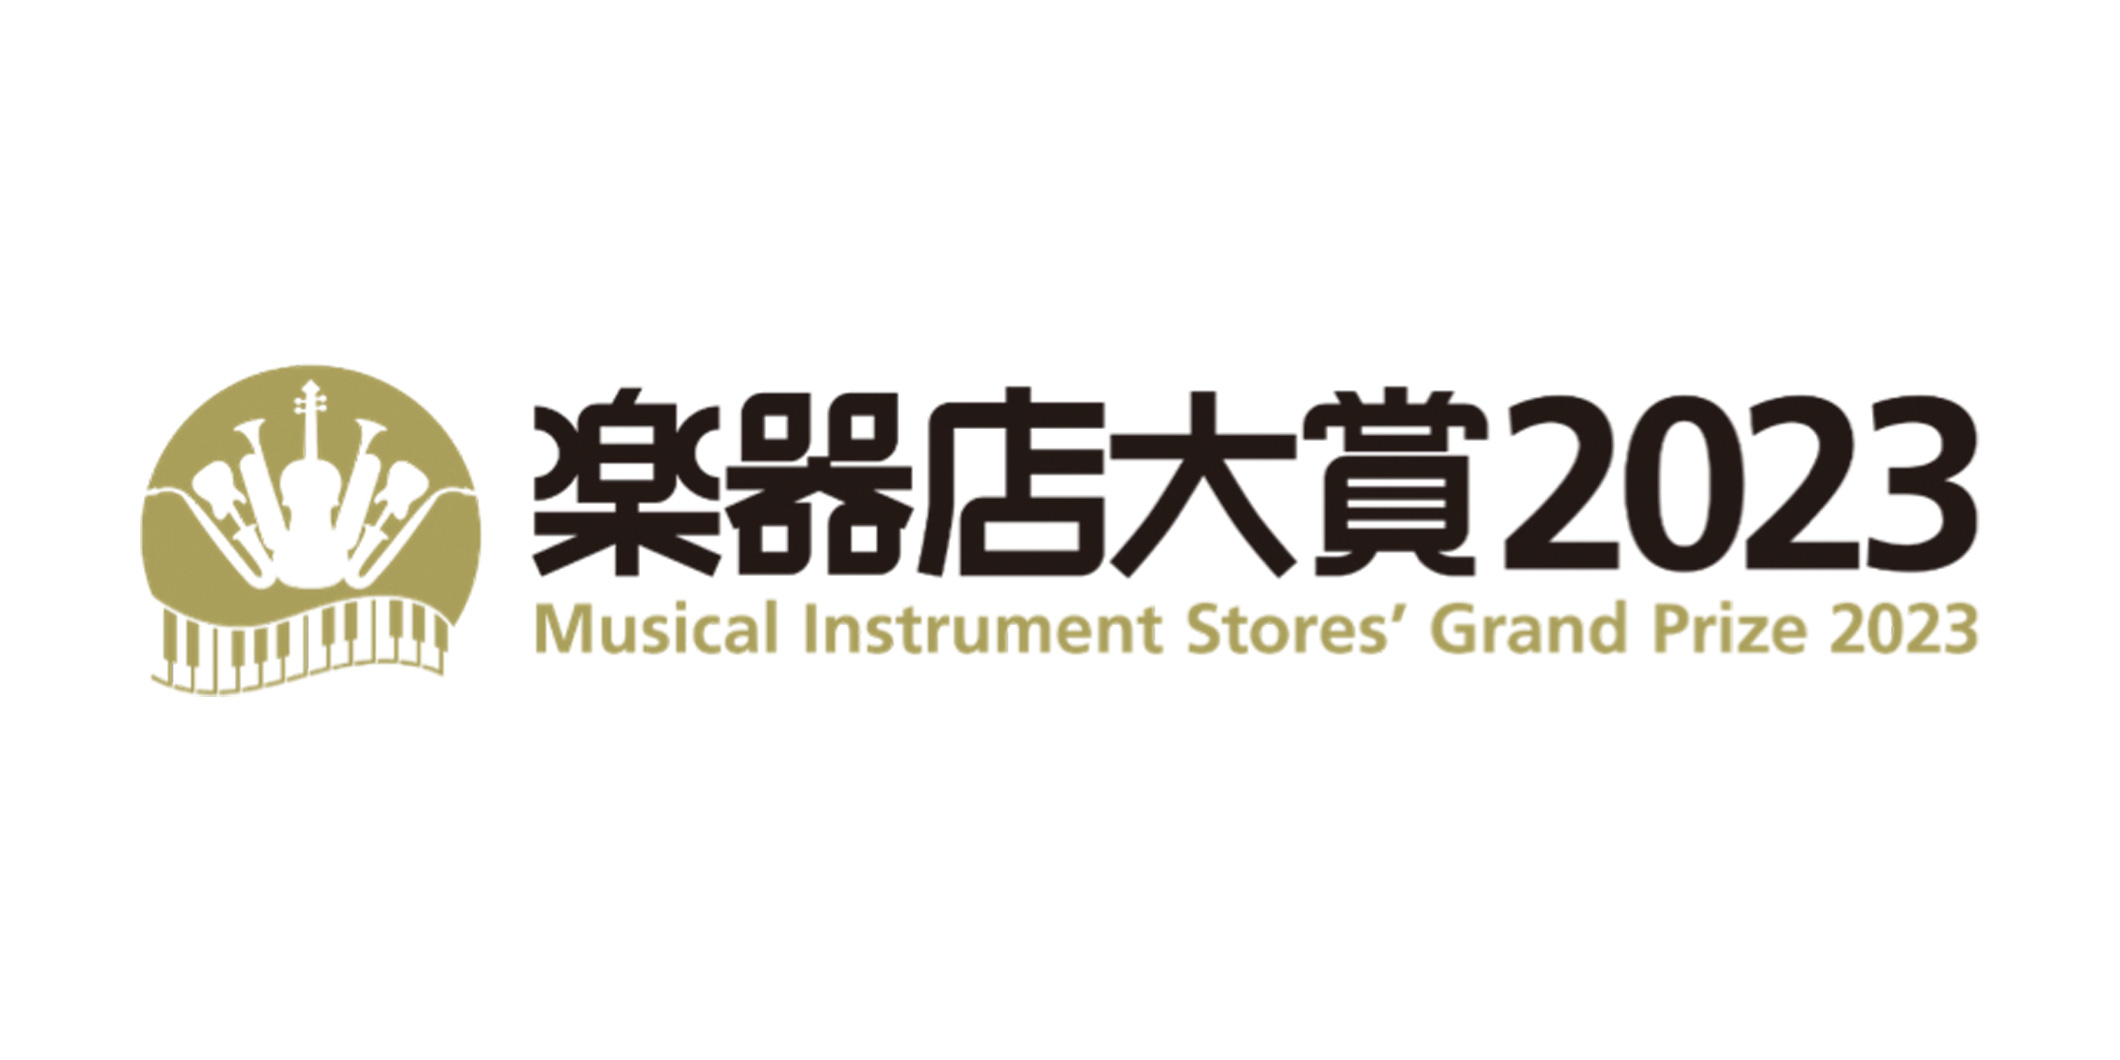 『楽器店大賞 2023』プレイヤー部門の一般投票受付が開始